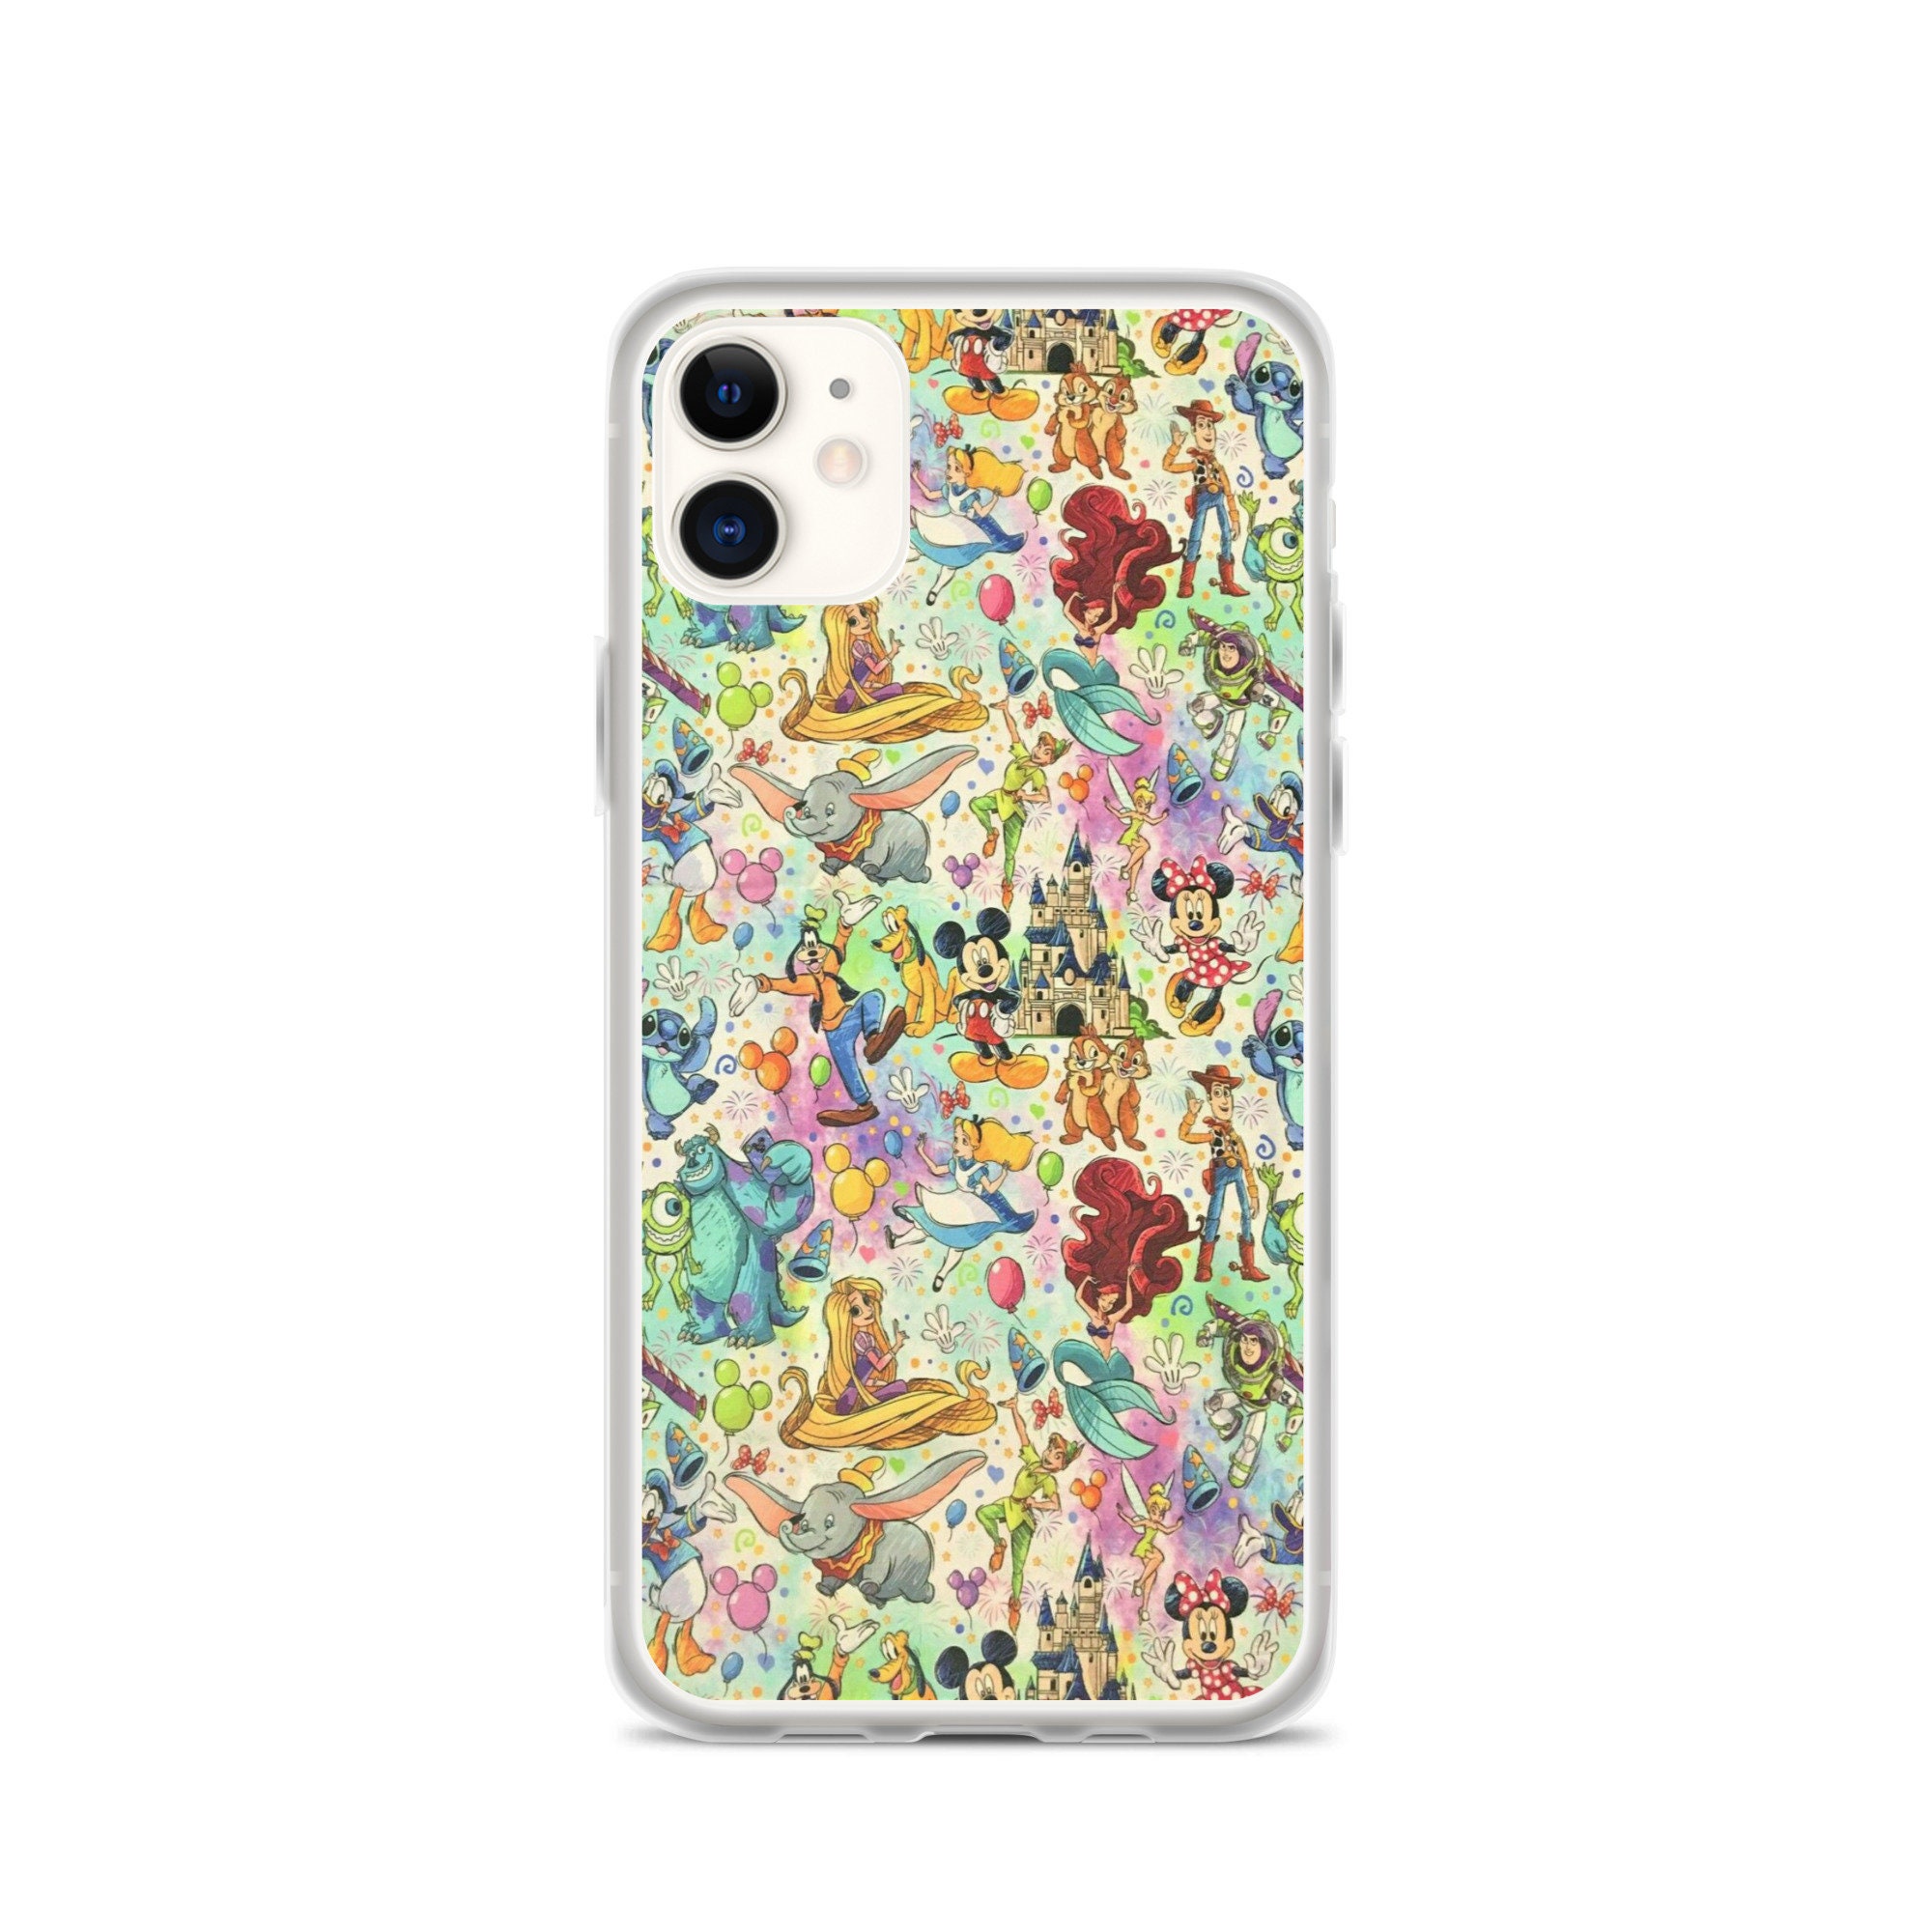 Cute Disney iPhone Case